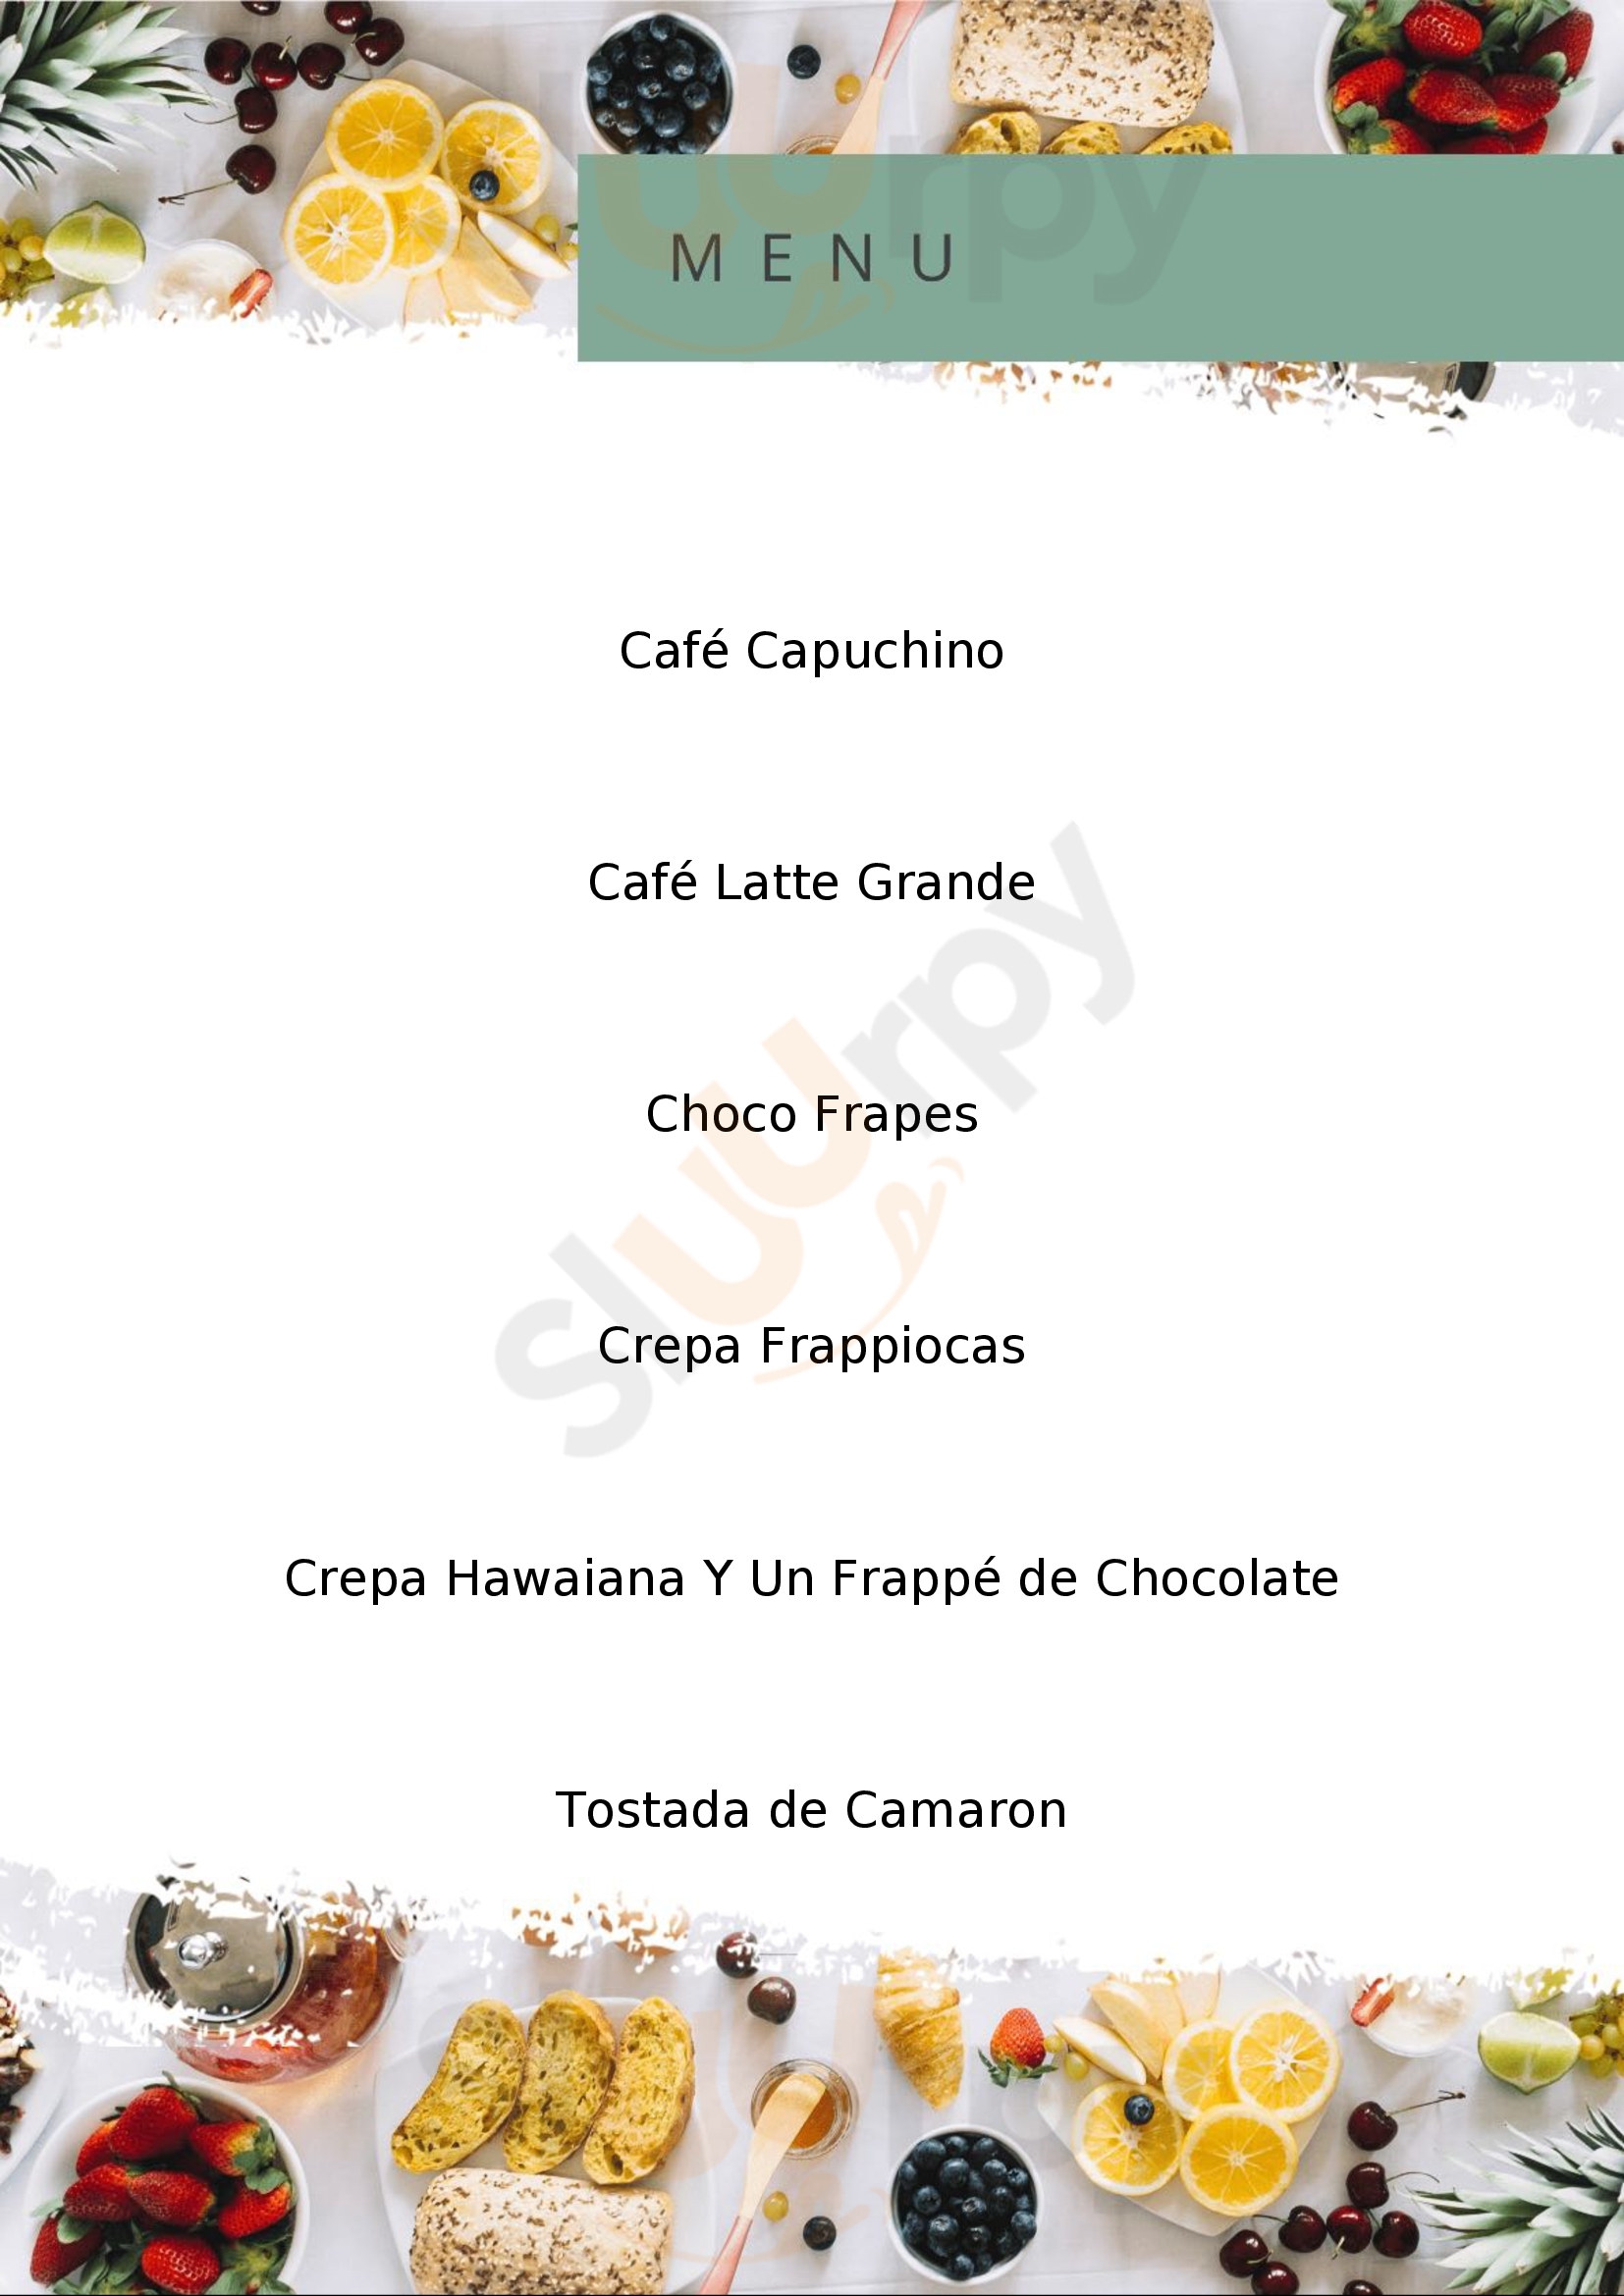 Frapioccas Café Ixtapa/Zihuatanejo Menu - 1